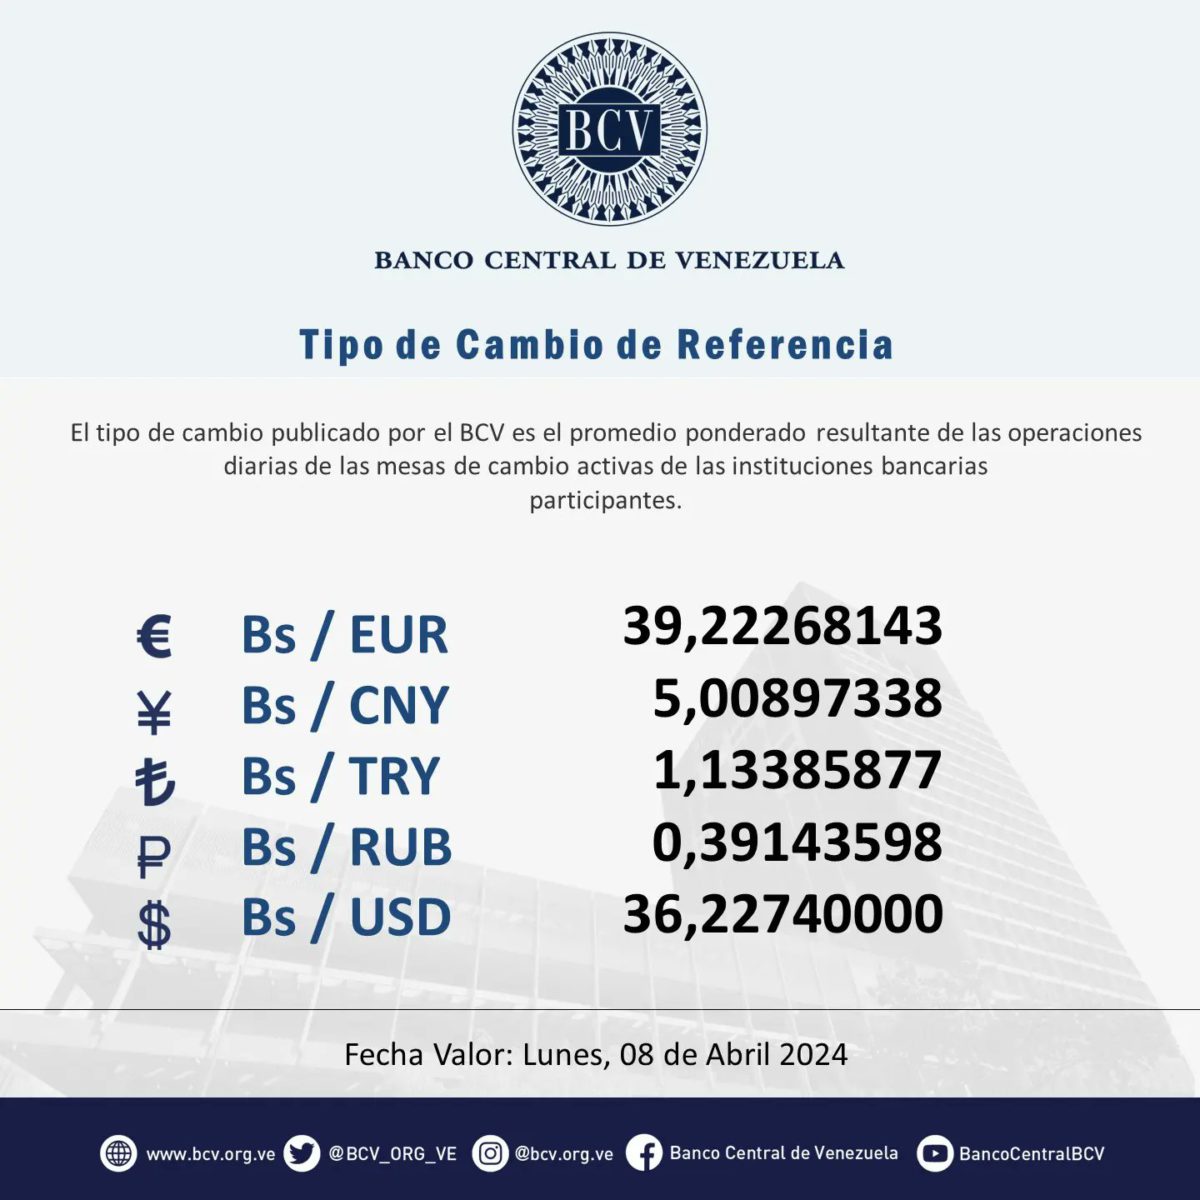 dolartoday en venezuela precio del dolar este sabado 6 de abril de 2024 laverdaddemonagas.com bcv11